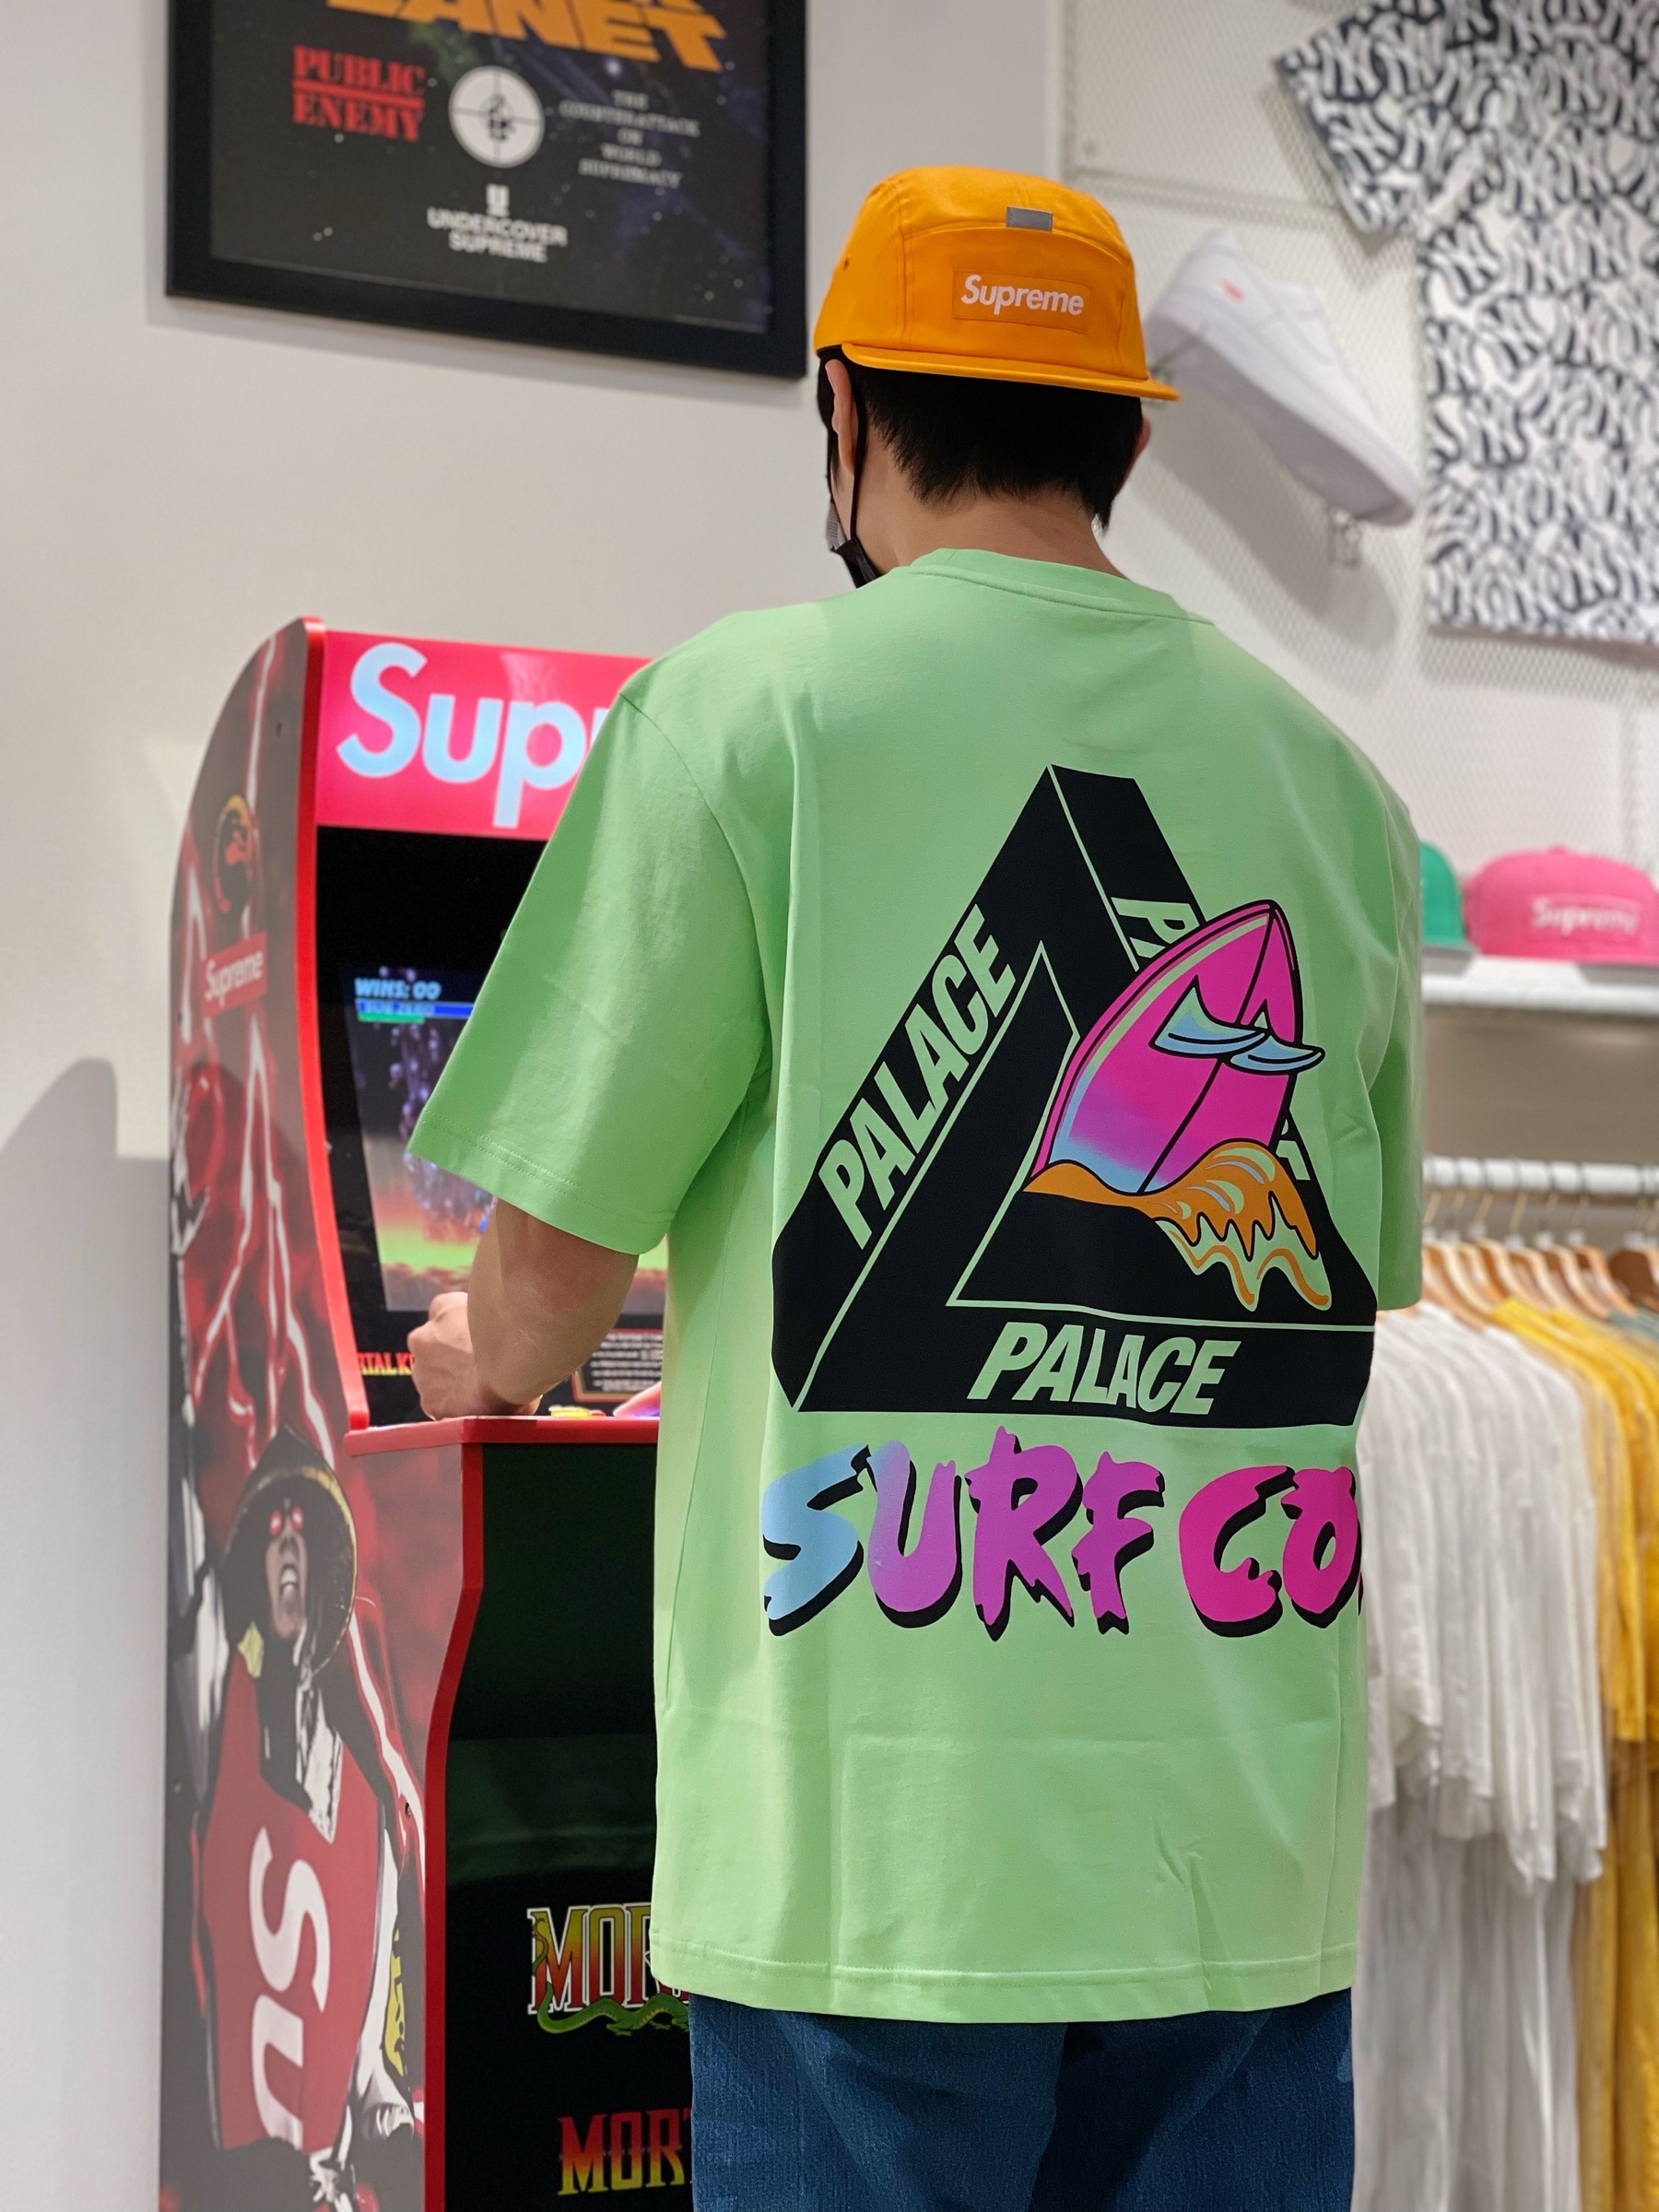 Palace Tri-Surf Co T-shirt Caramel